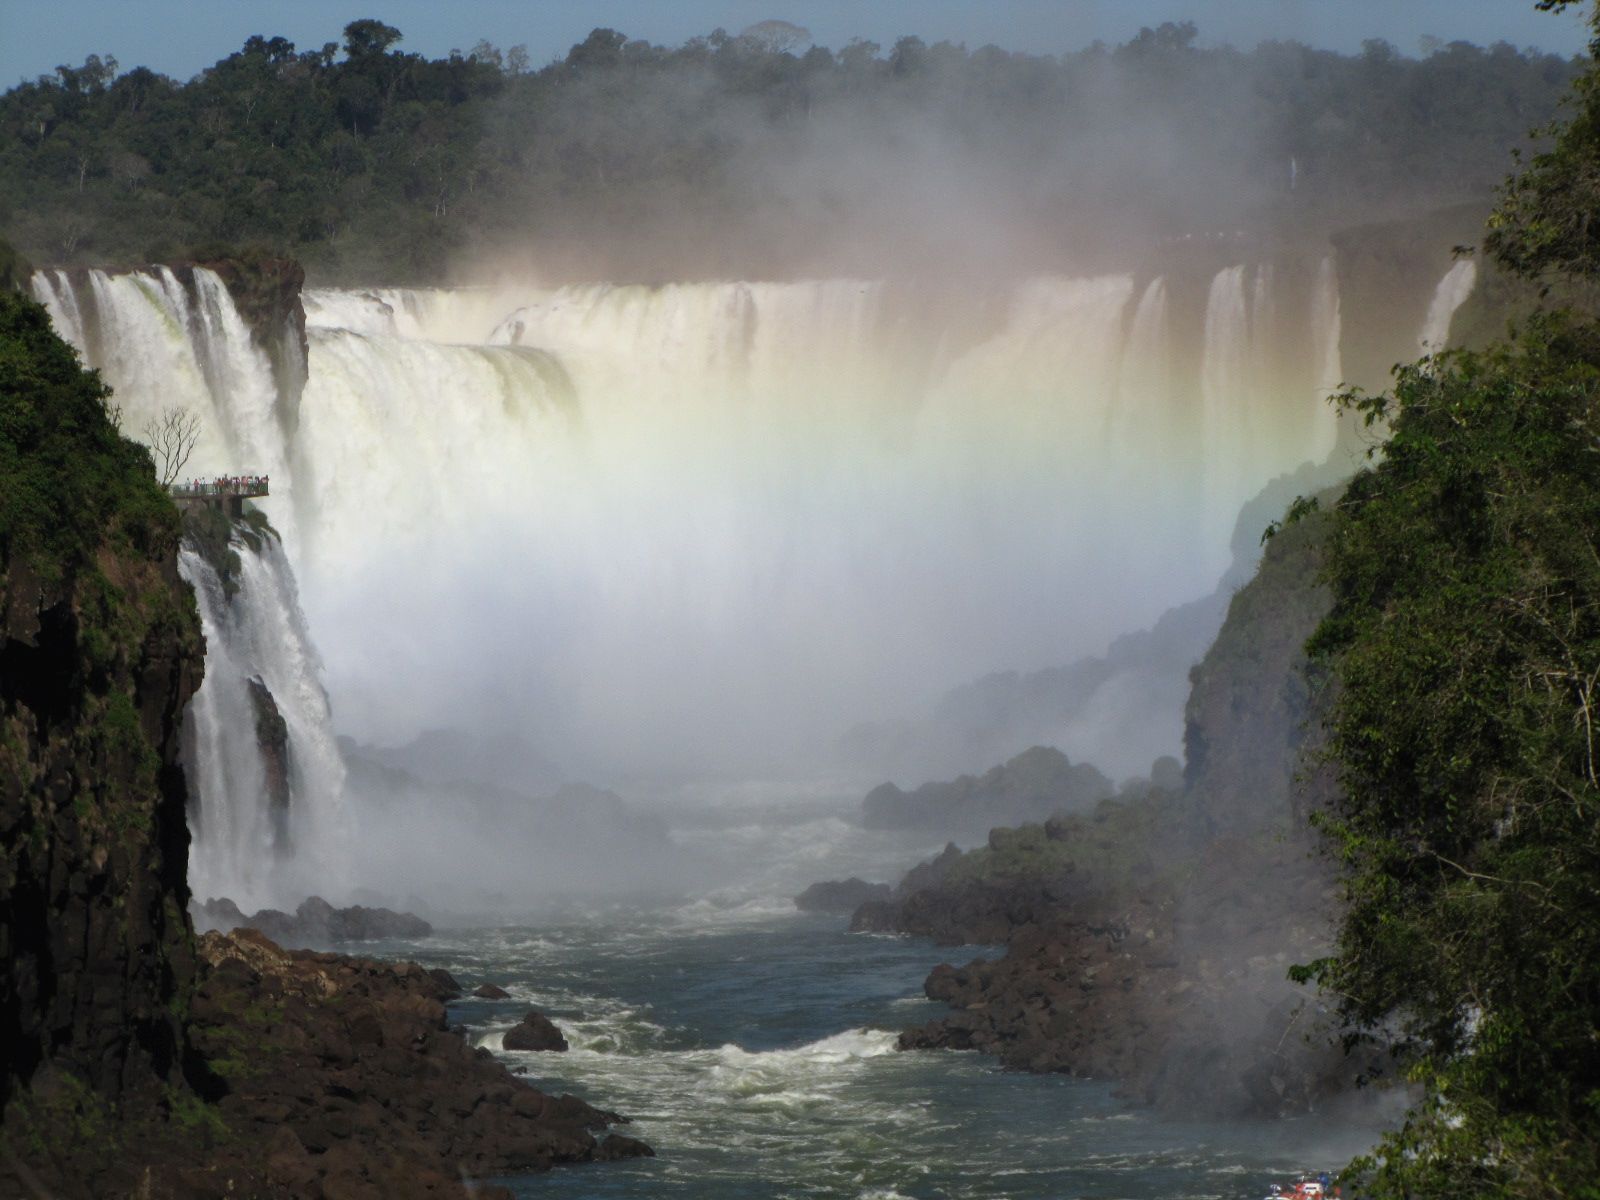 Click to enlarge image Iguazupano1.jpg